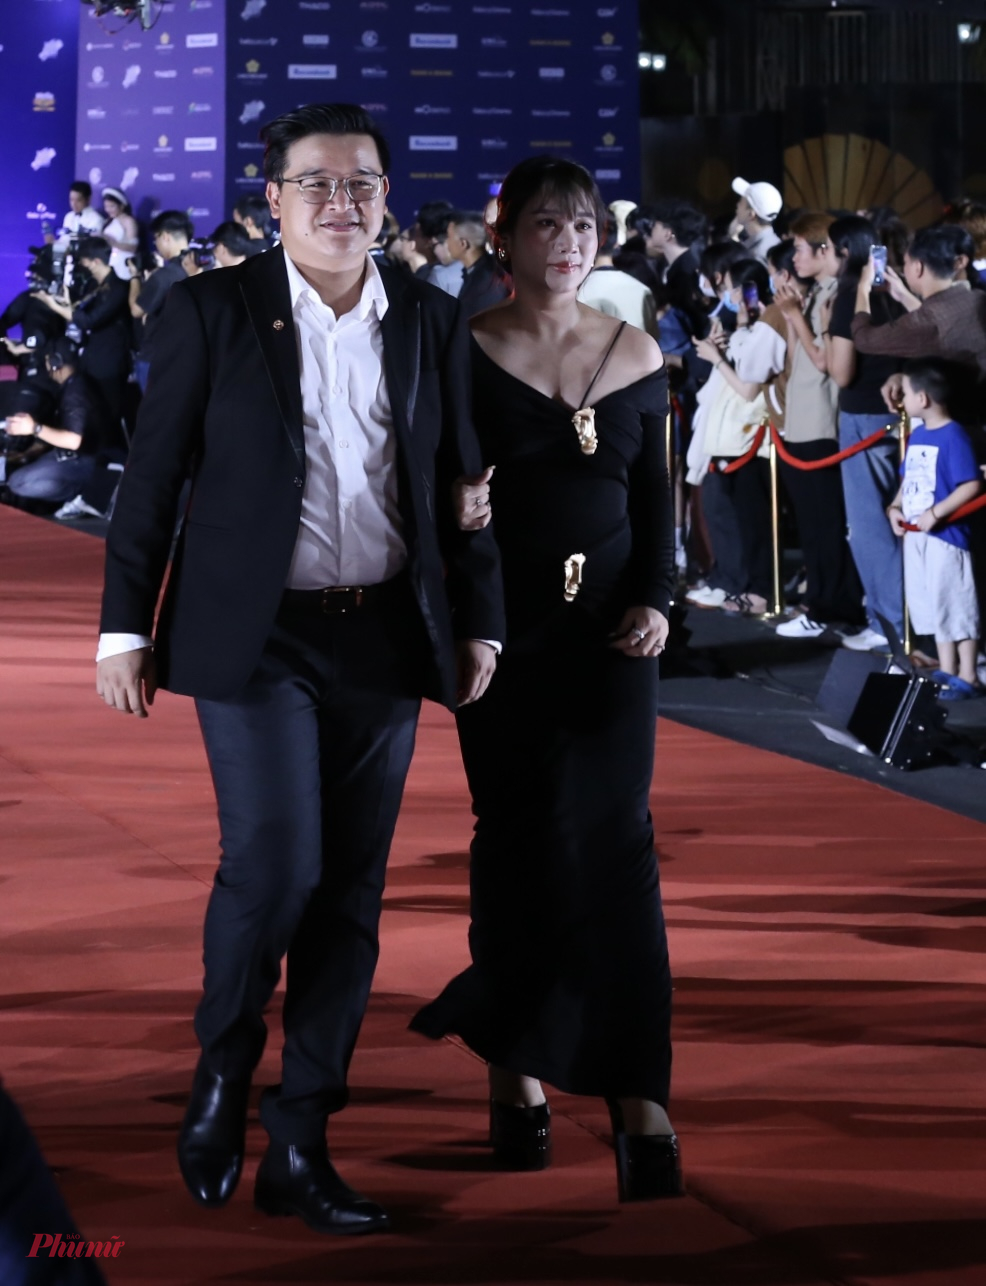 Đạo diễn Võ Thanh Hoà cùng vợ - nhà sản xuất Mai Bảo Ngọc dự đêm bế mạc sự kiện. Trên nhiều thảm đỏ, cặp vợ chồng cũng thường mặc trang phục đen, tiết chế phụ kiện.